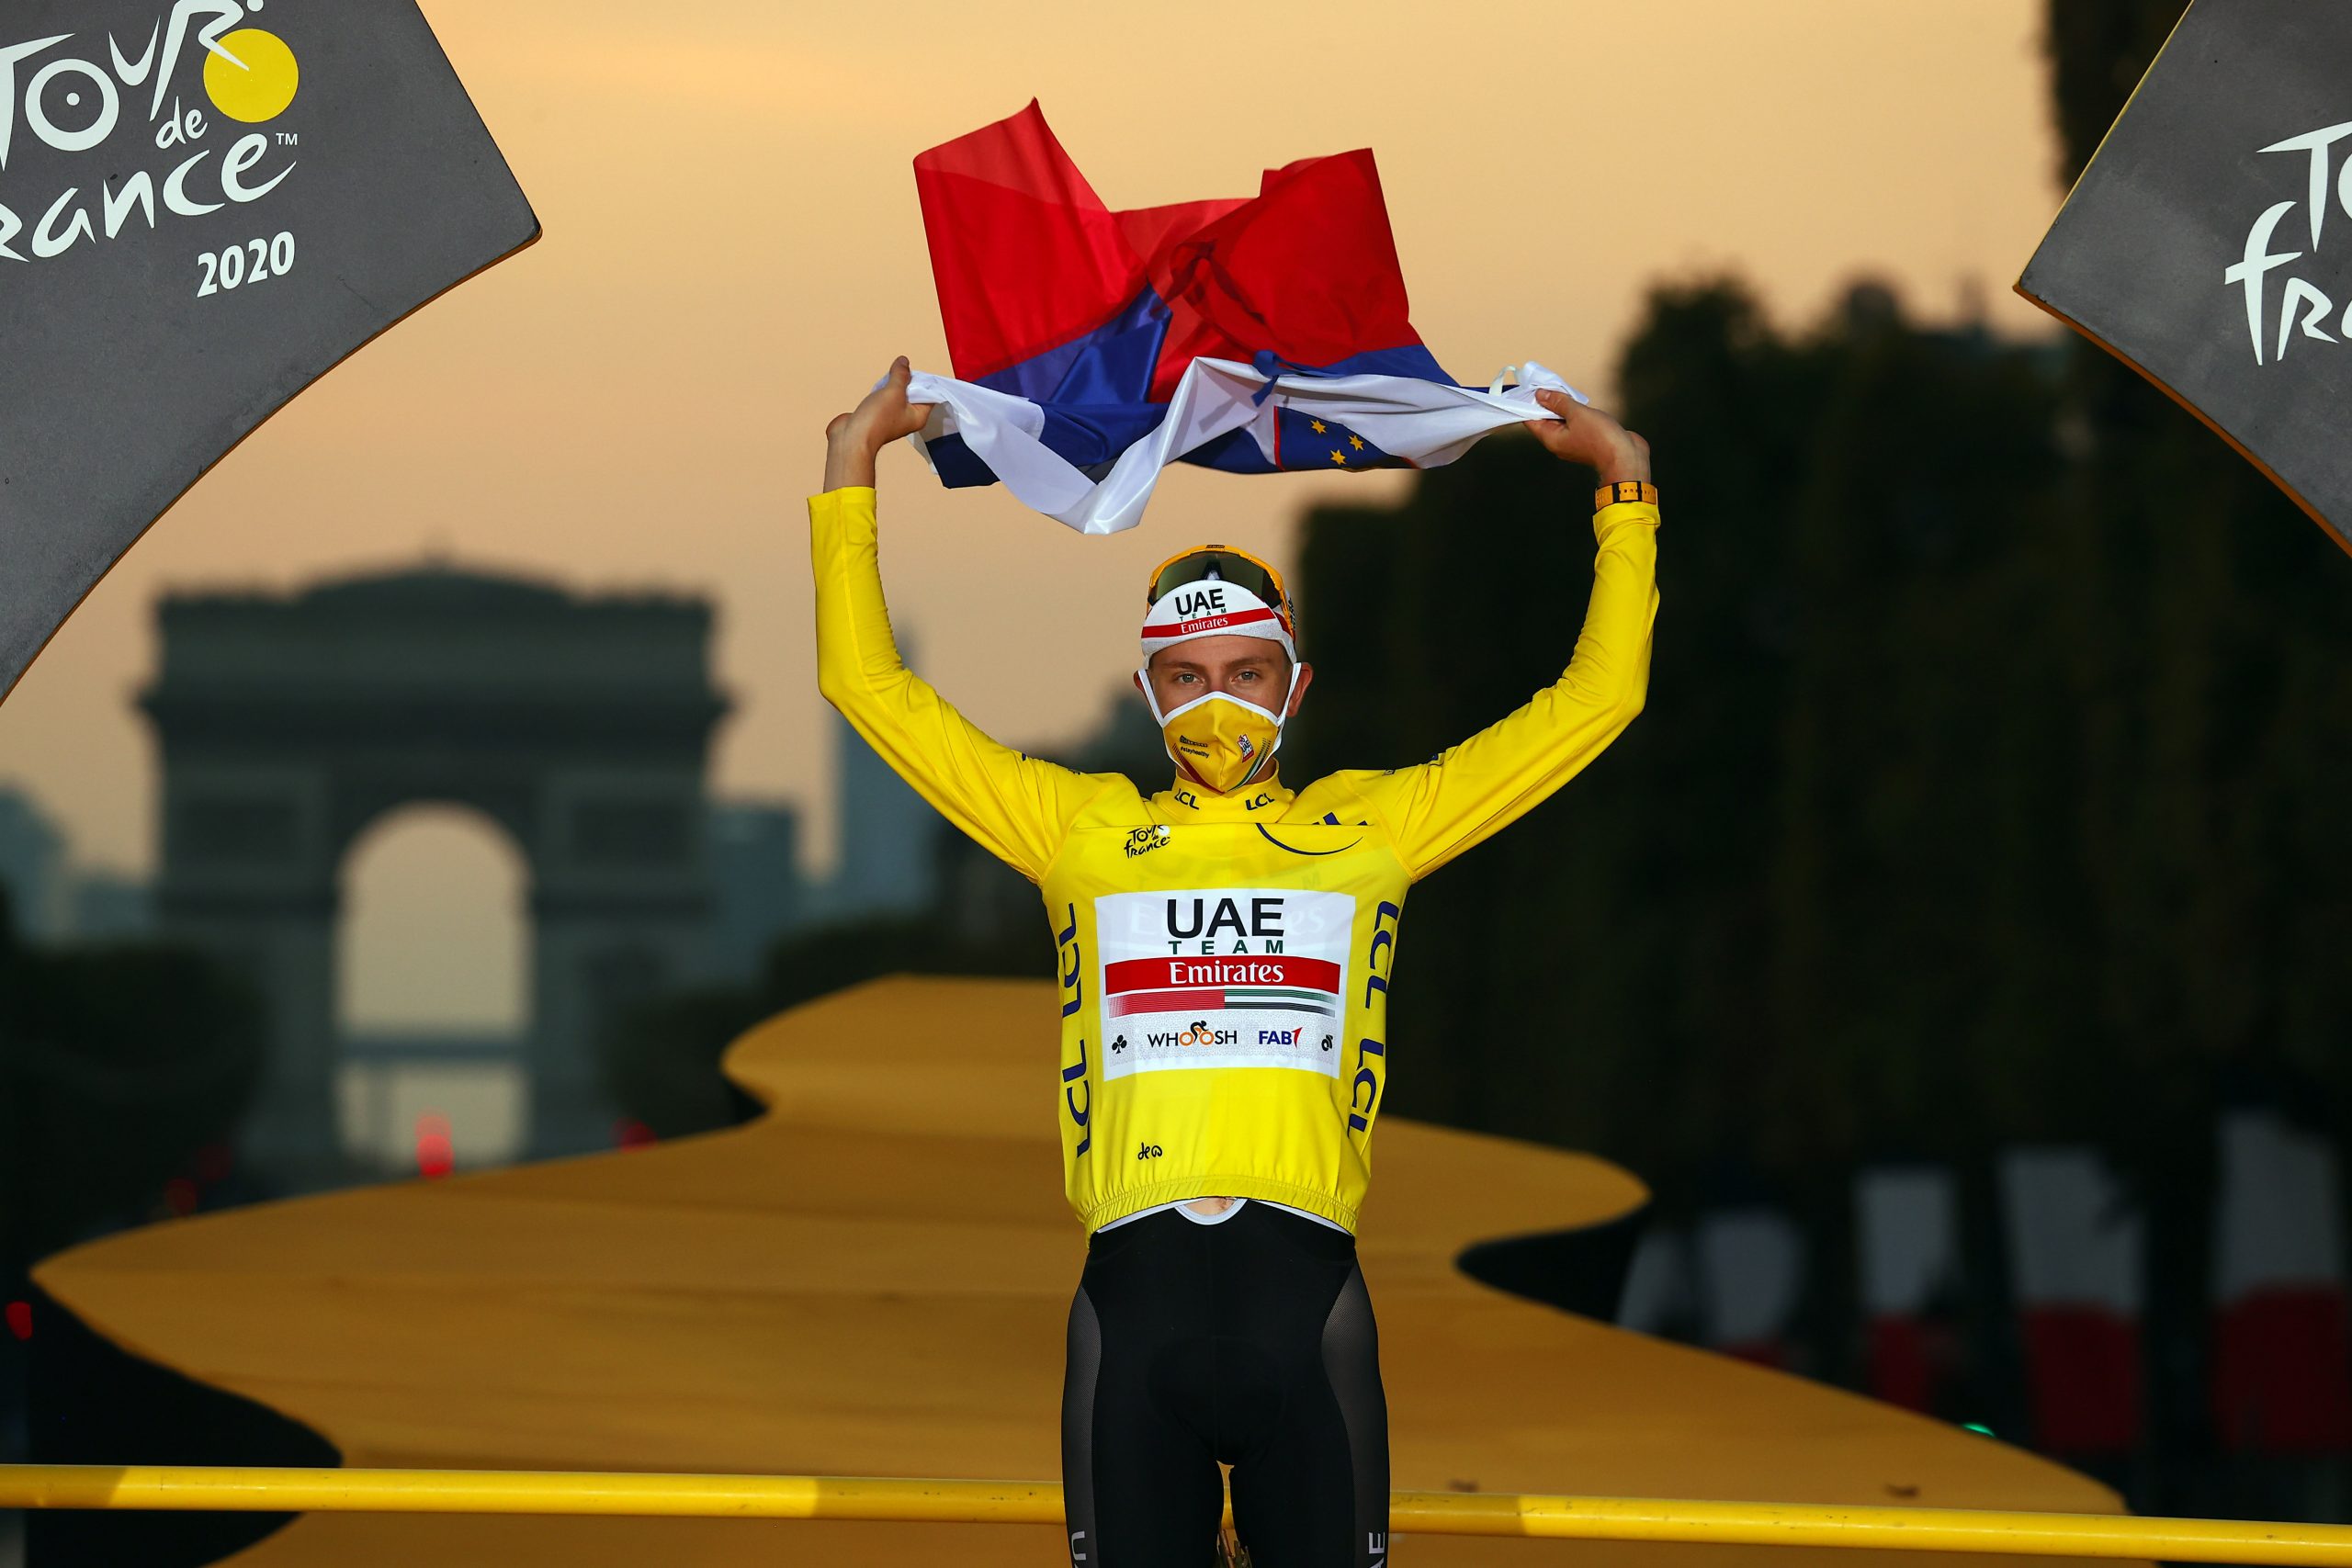 Tour de France 2020 – POGACAR